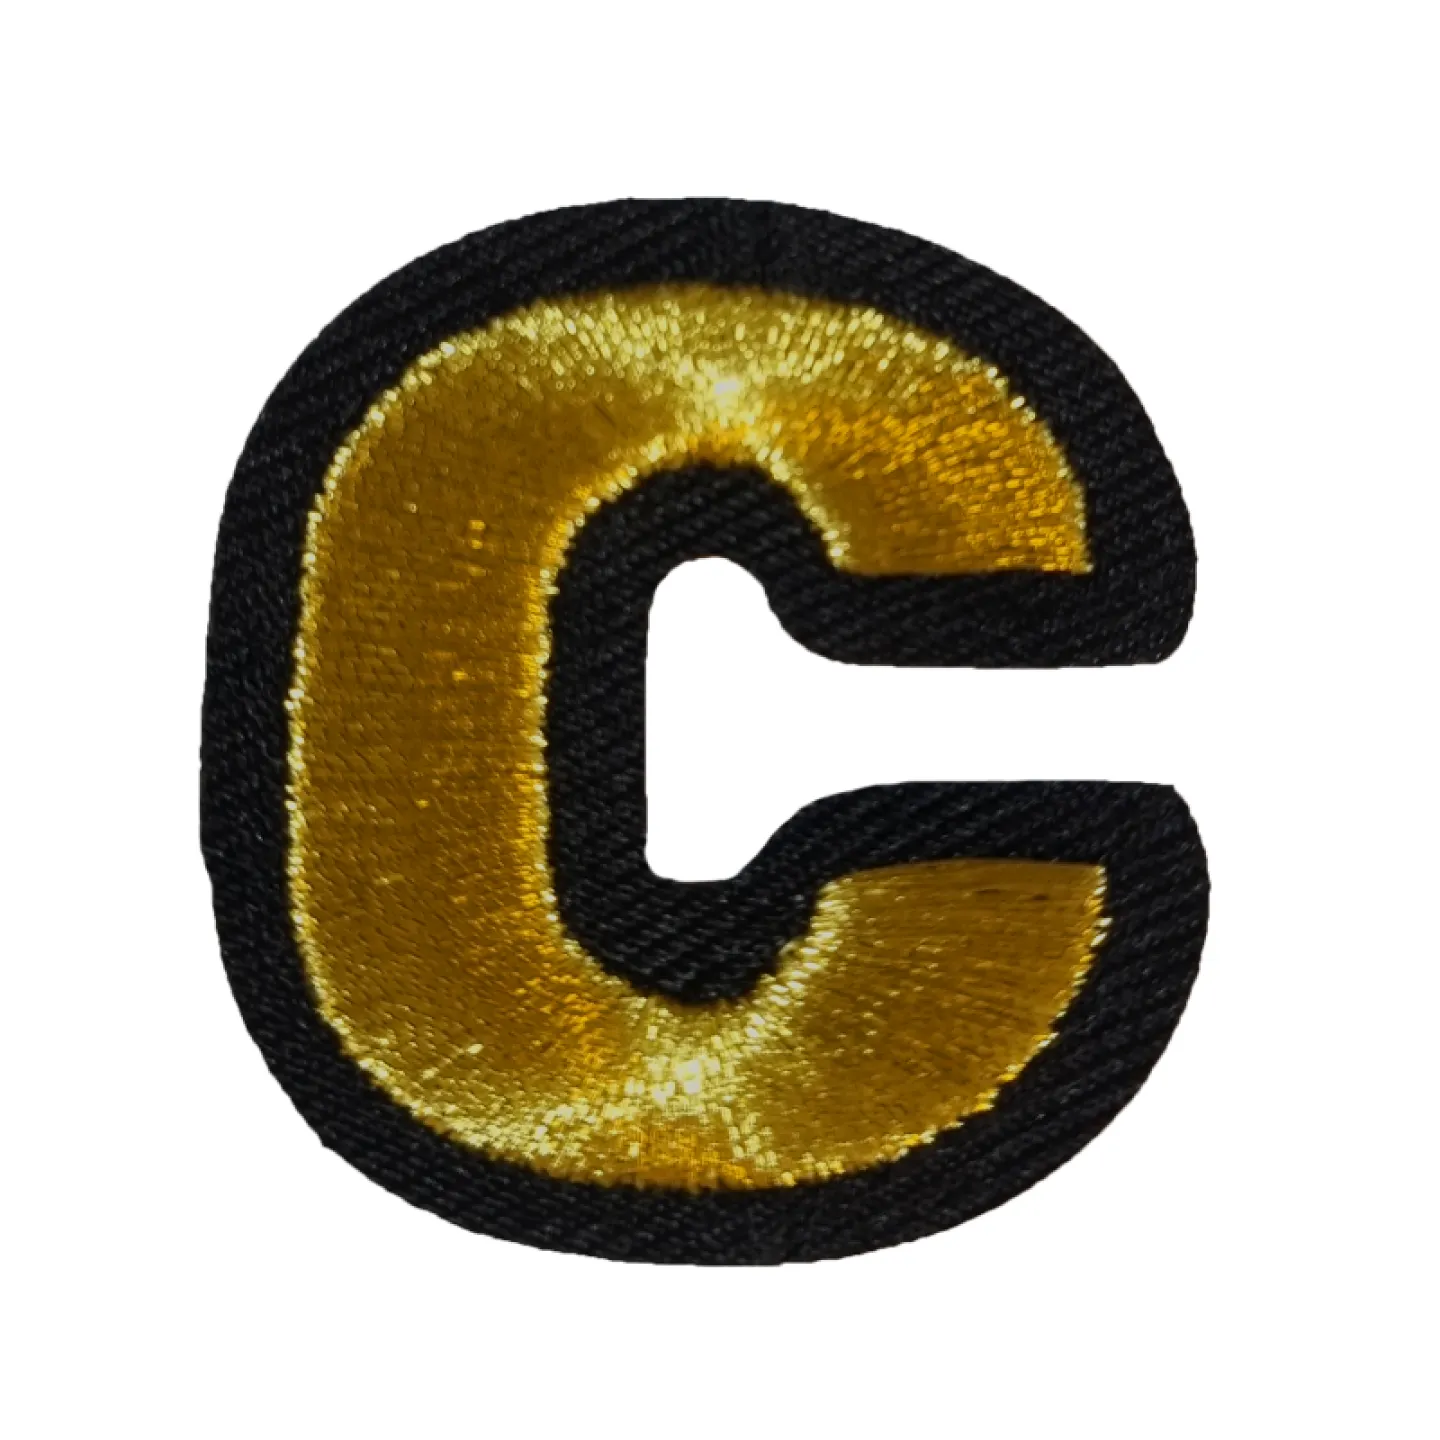 Kielegat embleem Gouden letter C.